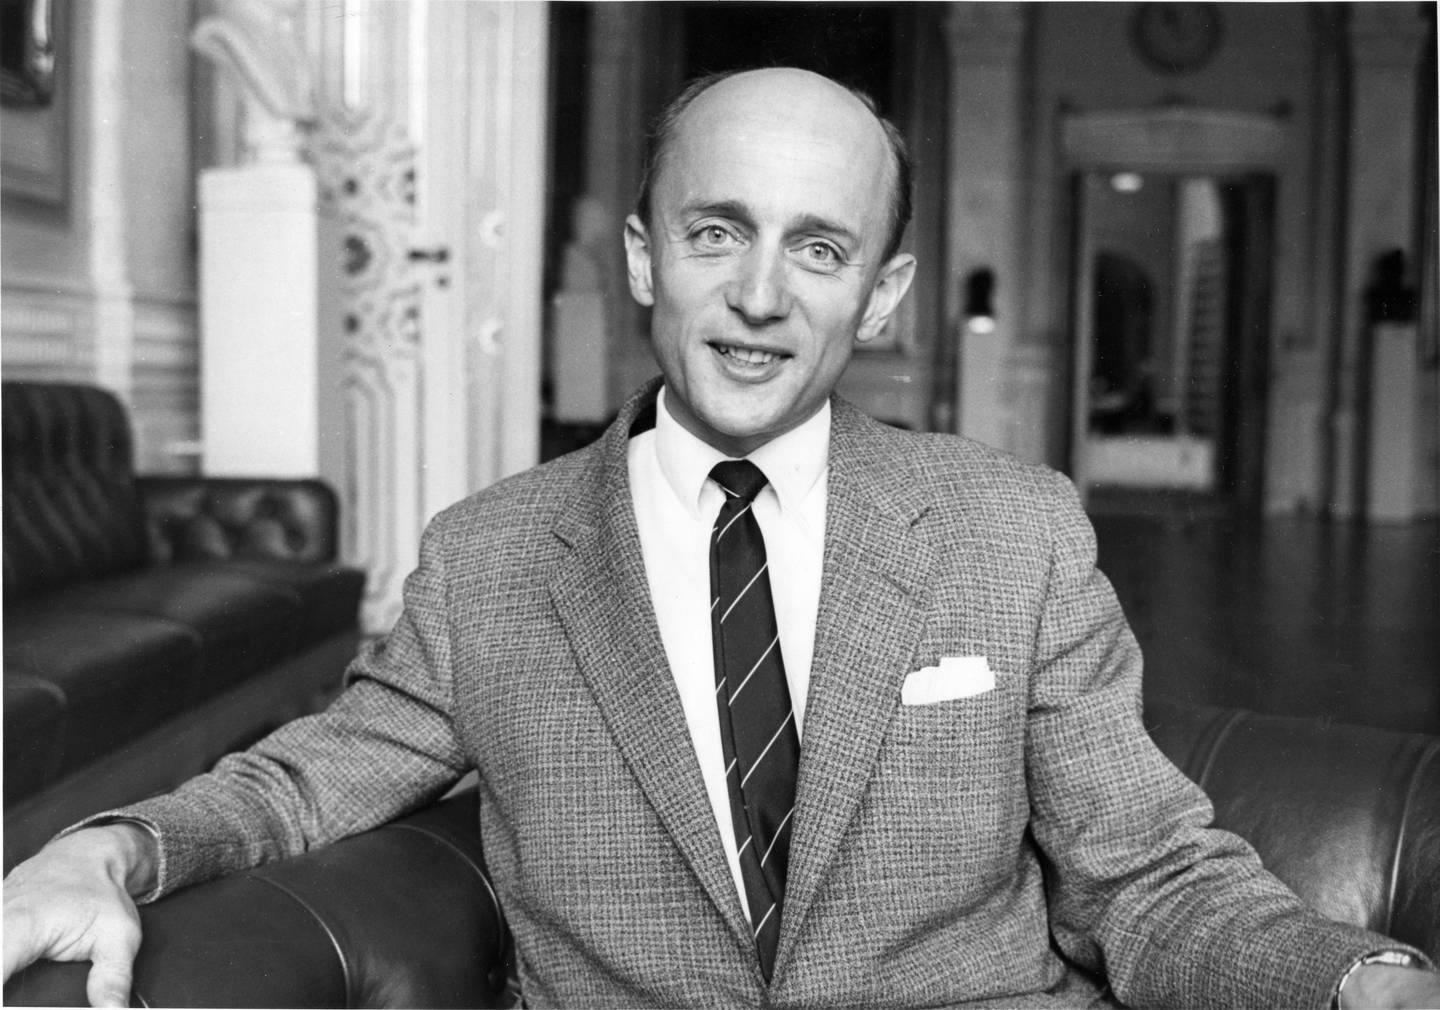 1961: Stortingsrepresentant og generalsekretær i Høyre Kåre Willoch. Foto: Ivar Aaserud / Aktuell / NTB.